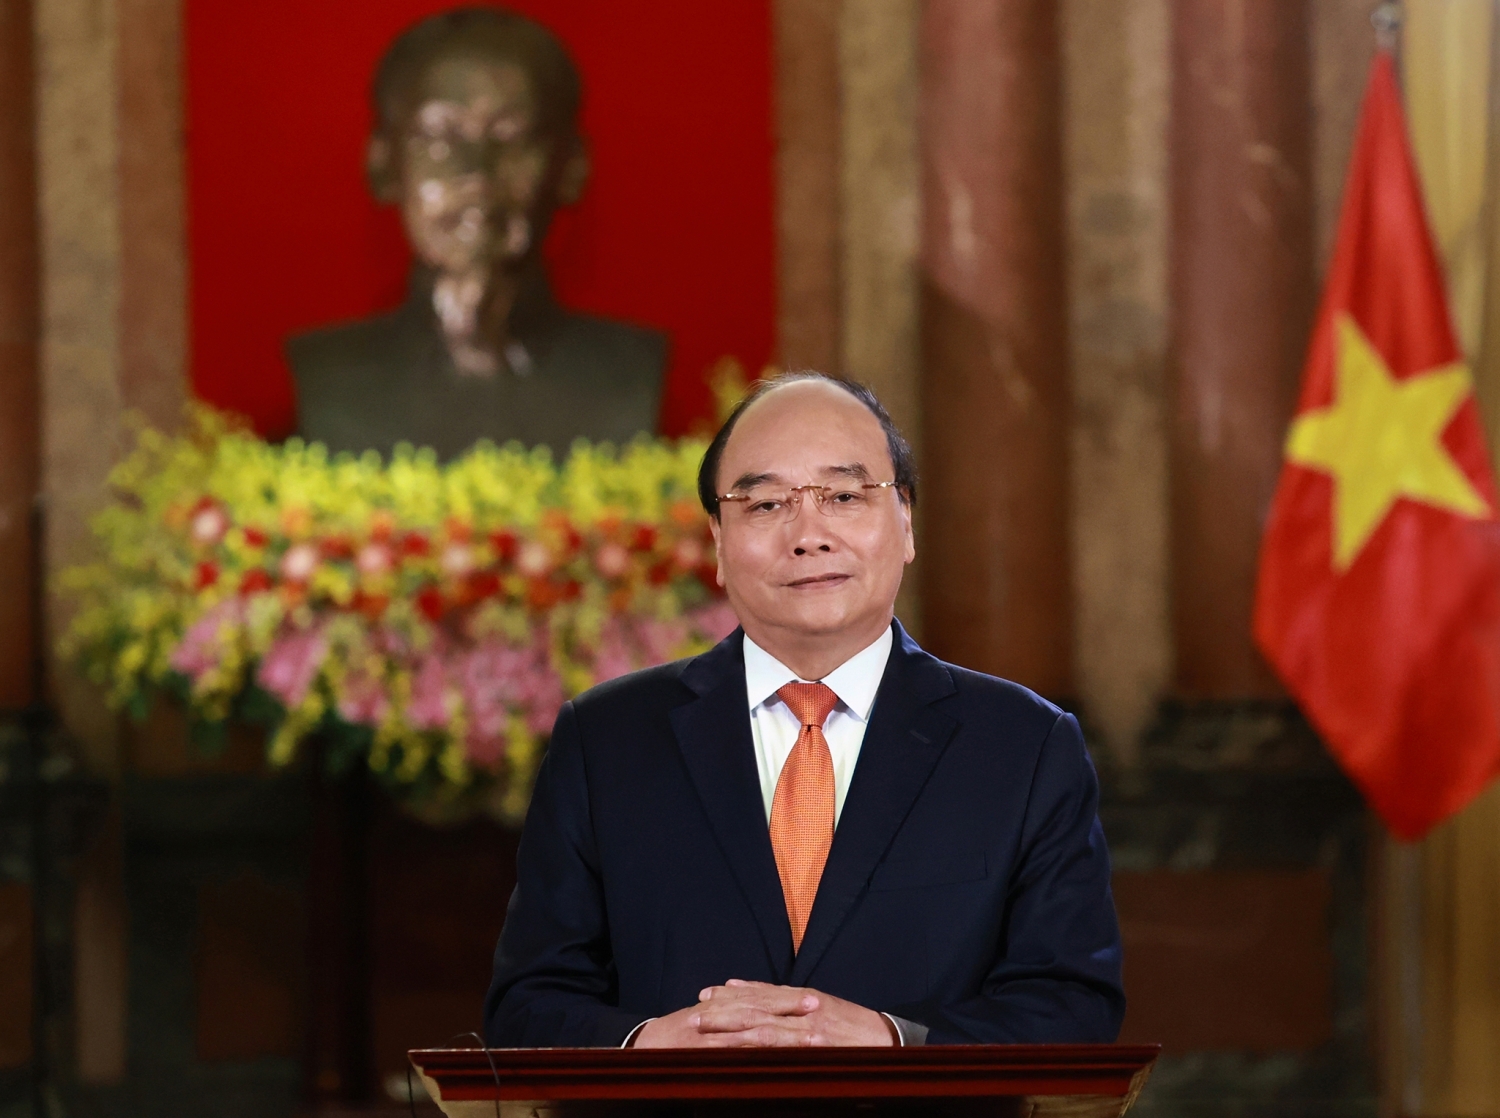 Chủ tịch nước Nguyễn Xuân Phúc gửi thư chúc mừng nhân dịp năm học mới 2021-2022